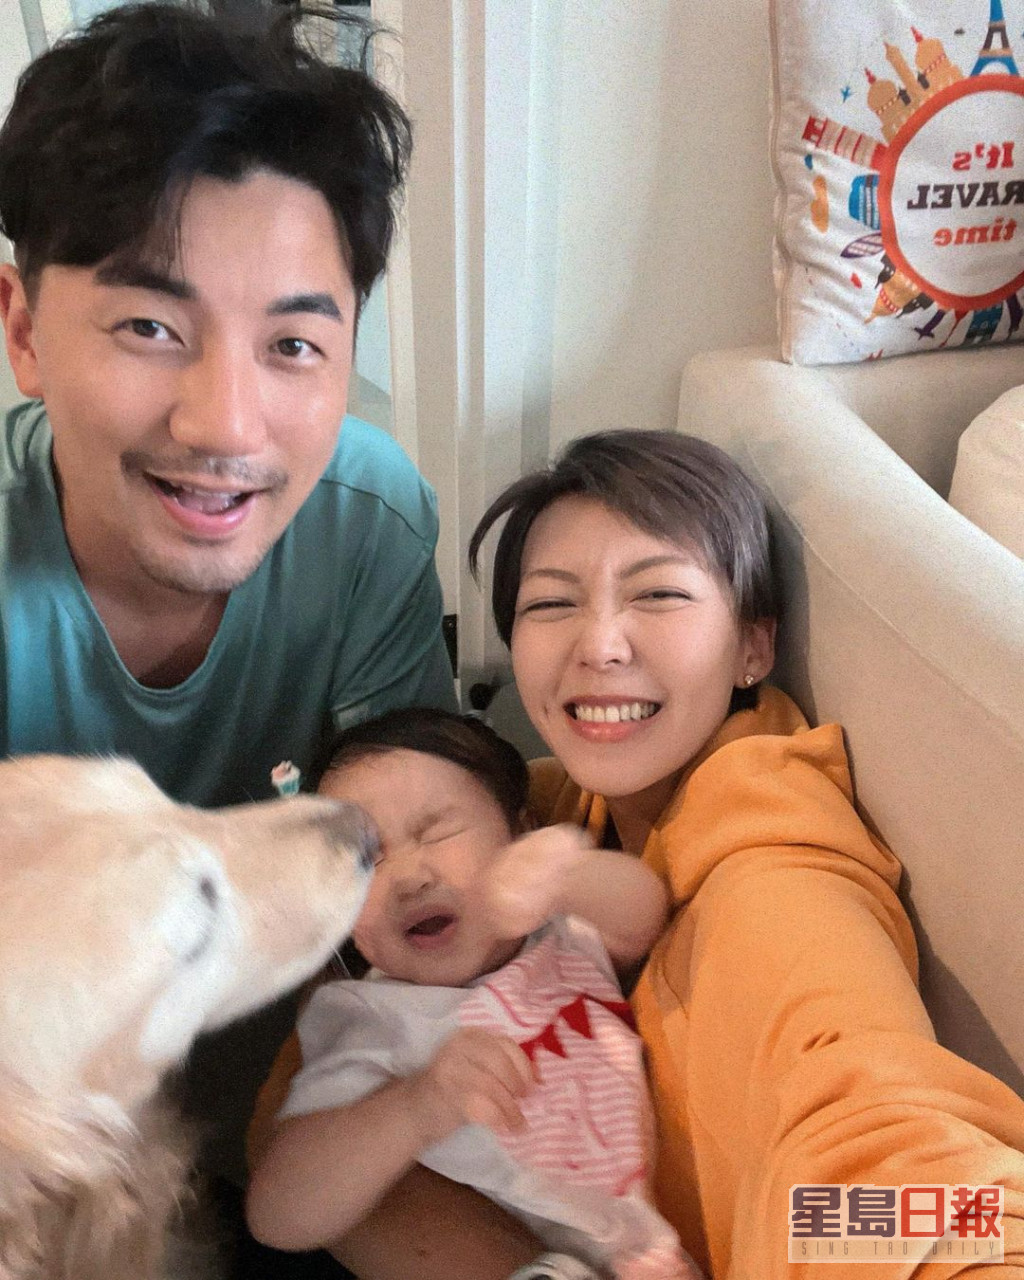 日前梁诺妍分享家庭照惹网民爆笑。